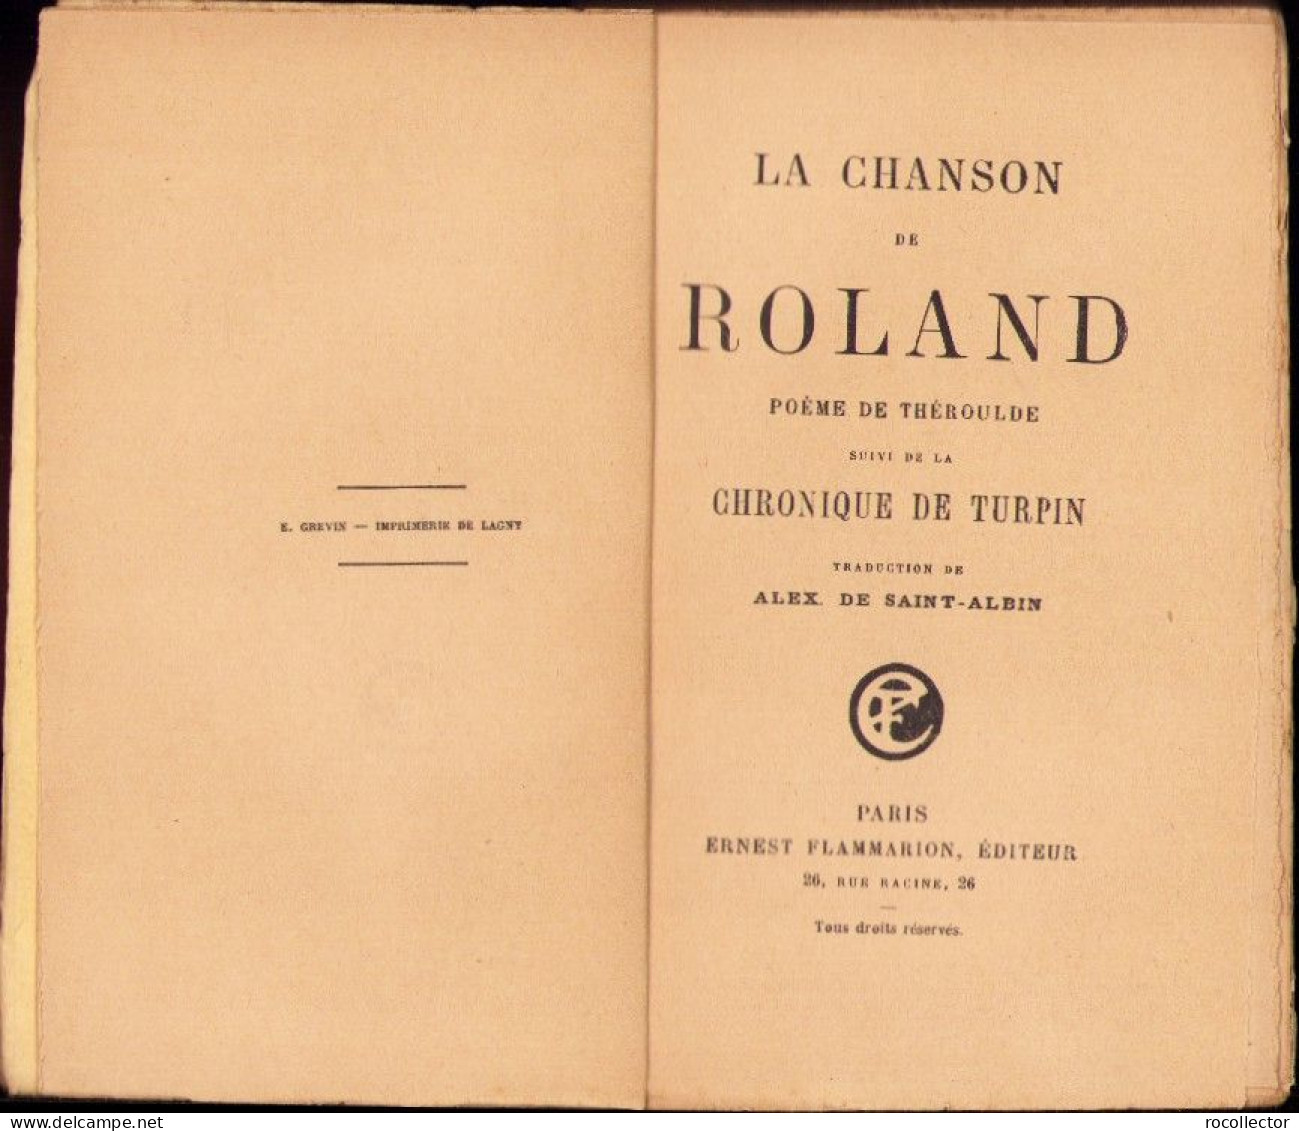 La Chanson De Roland Poeme De Theroulde Suivi De La Chronique De Turpin, Paris C4318N - Libri Vecchi E Da Collezione